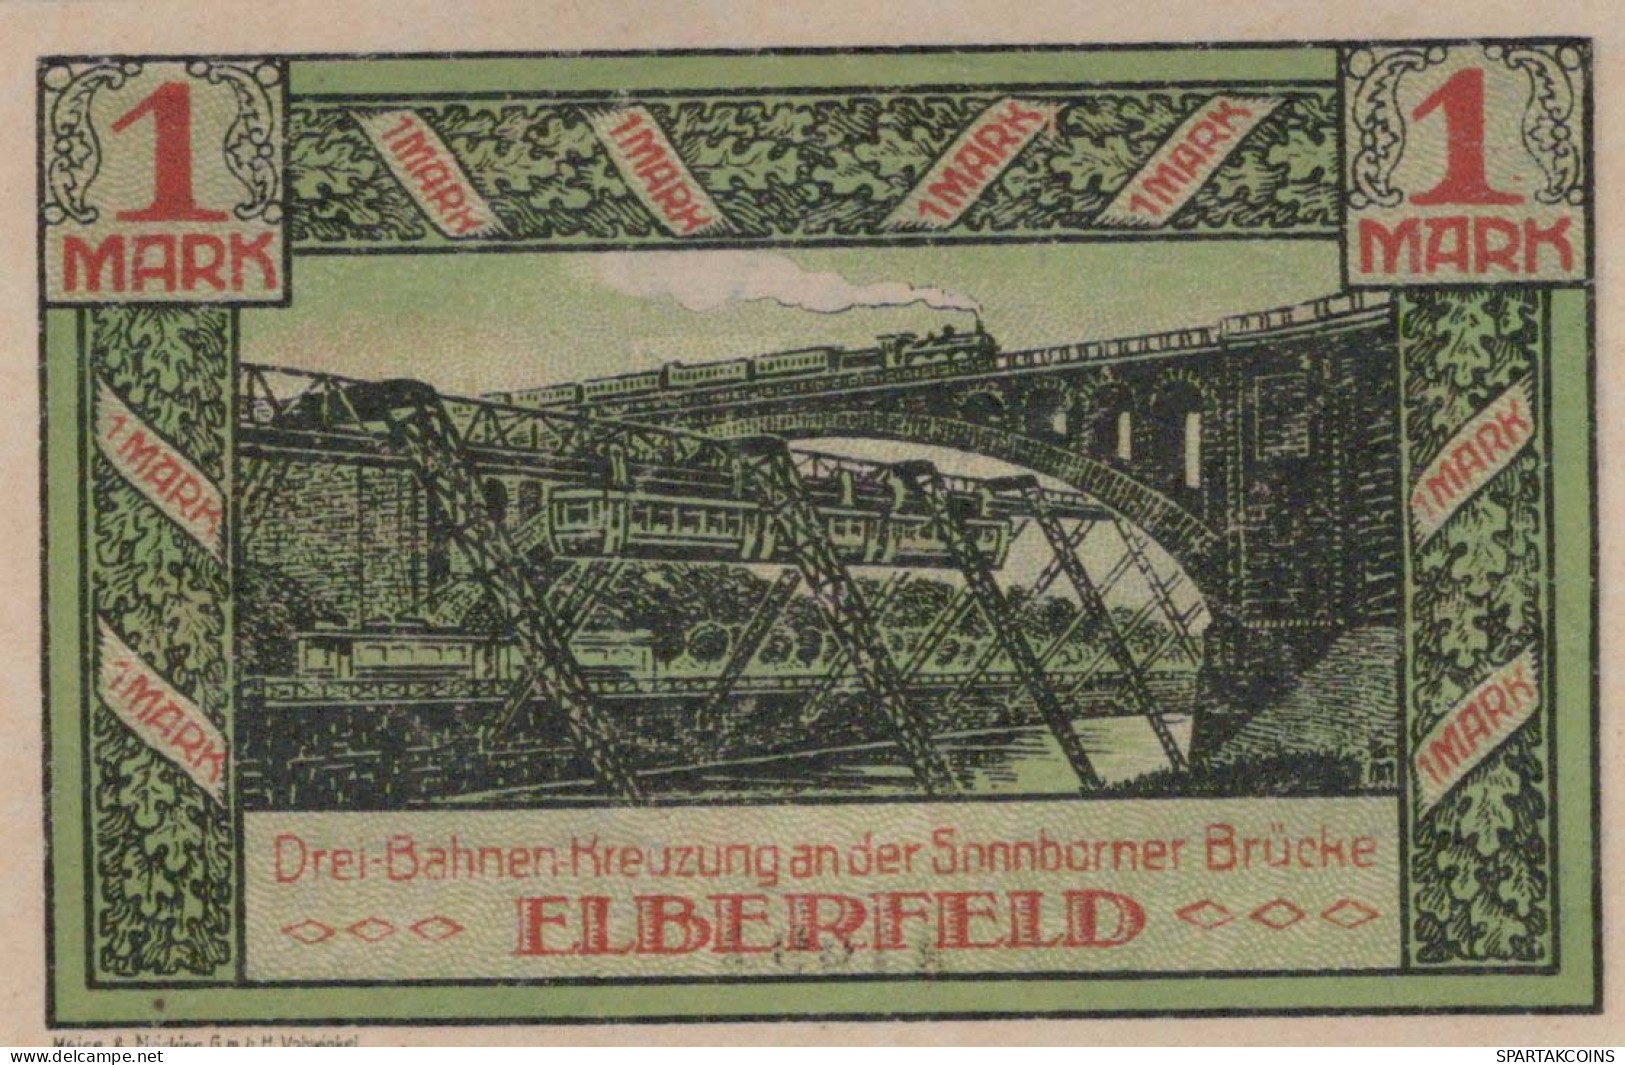 1 MARK 1920 Stadt ELBERFELD Rhine UNC DEUTSCHLAND Notgeld Banknote #PB152 - [11] Emissioni Locali